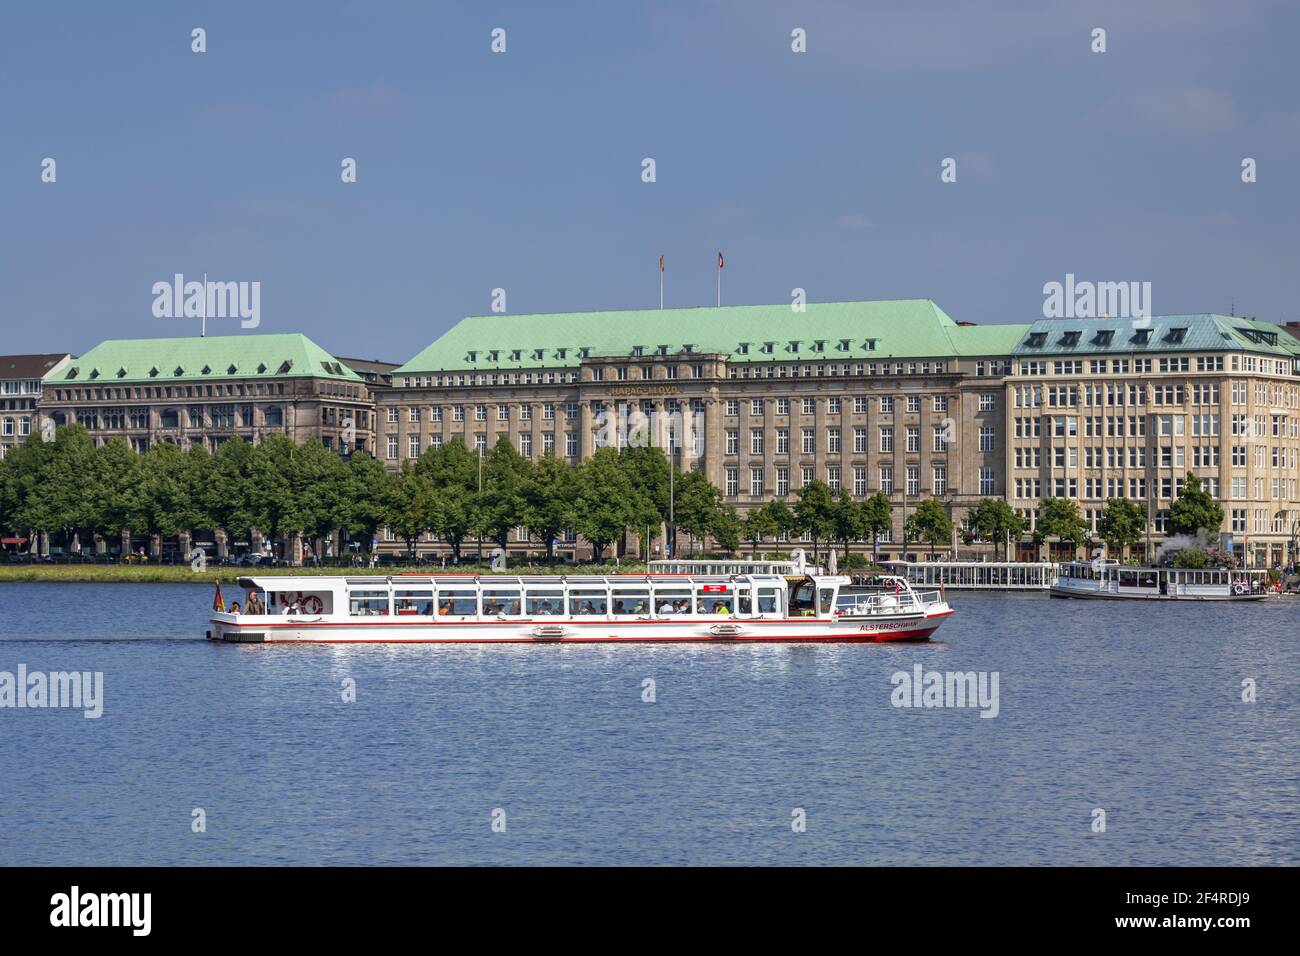 Géographie / Voyage, Allemagne, Hambourg, Hambourg, navire de passagers sur Alster intérieur en face de HAPAG Lloyd , droits-supplémentaires-autorisation-Info-non-disponible Banque D'Images